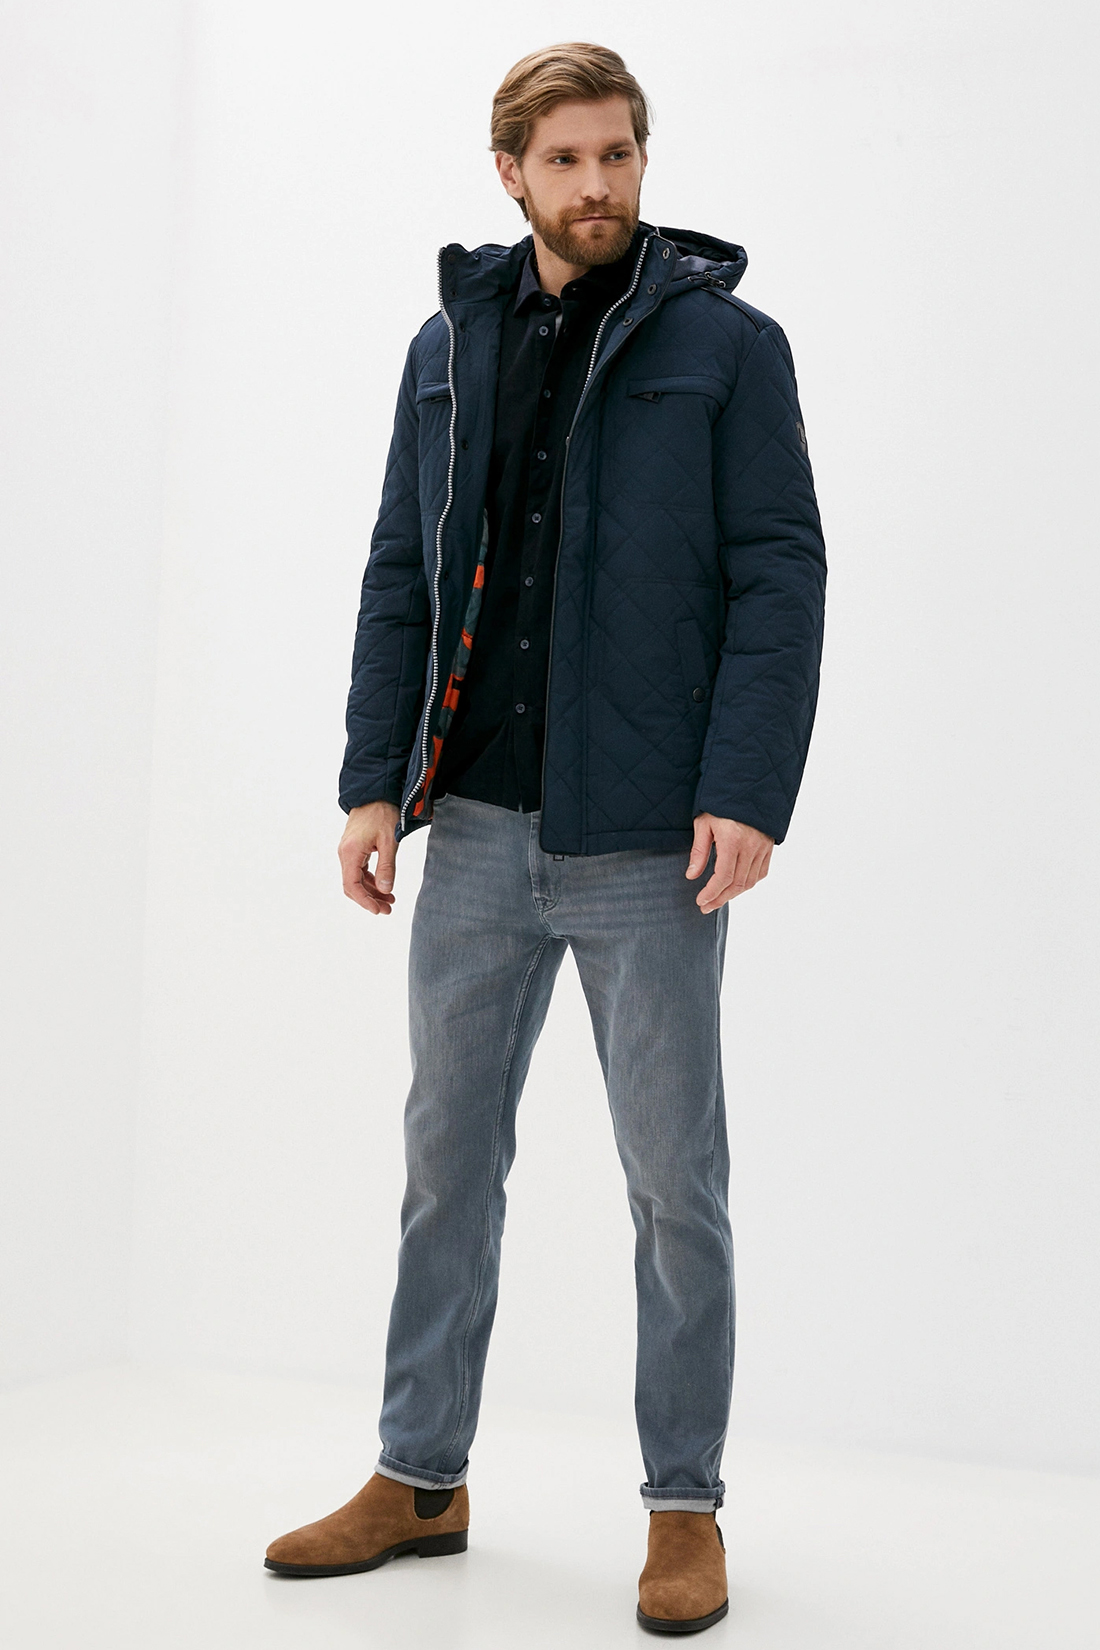 Куртка (арт. baon B530535), размер XL, цвет синий Куртка (арт. baon B530535) - фото 5